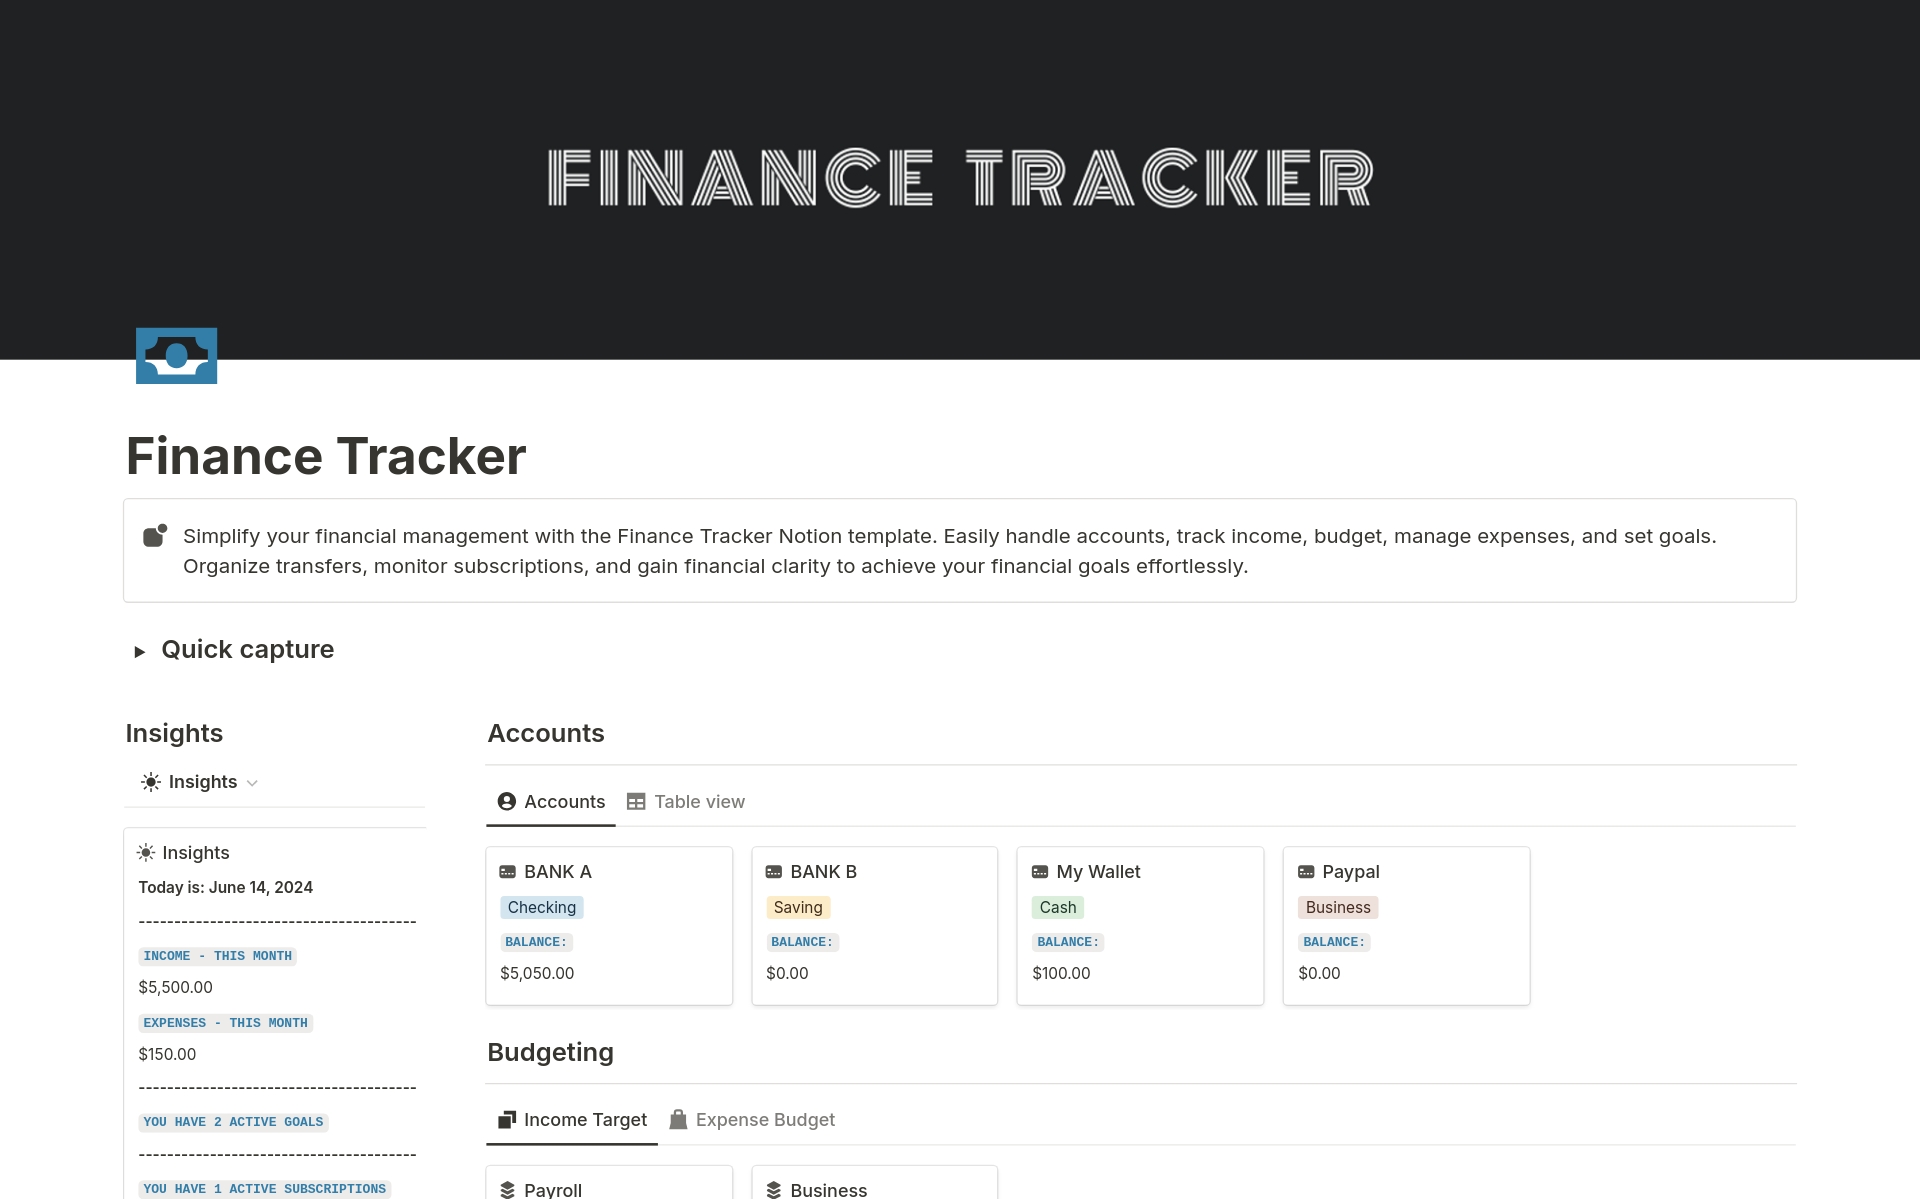 Vista previa de una plantilla para Finance tracker